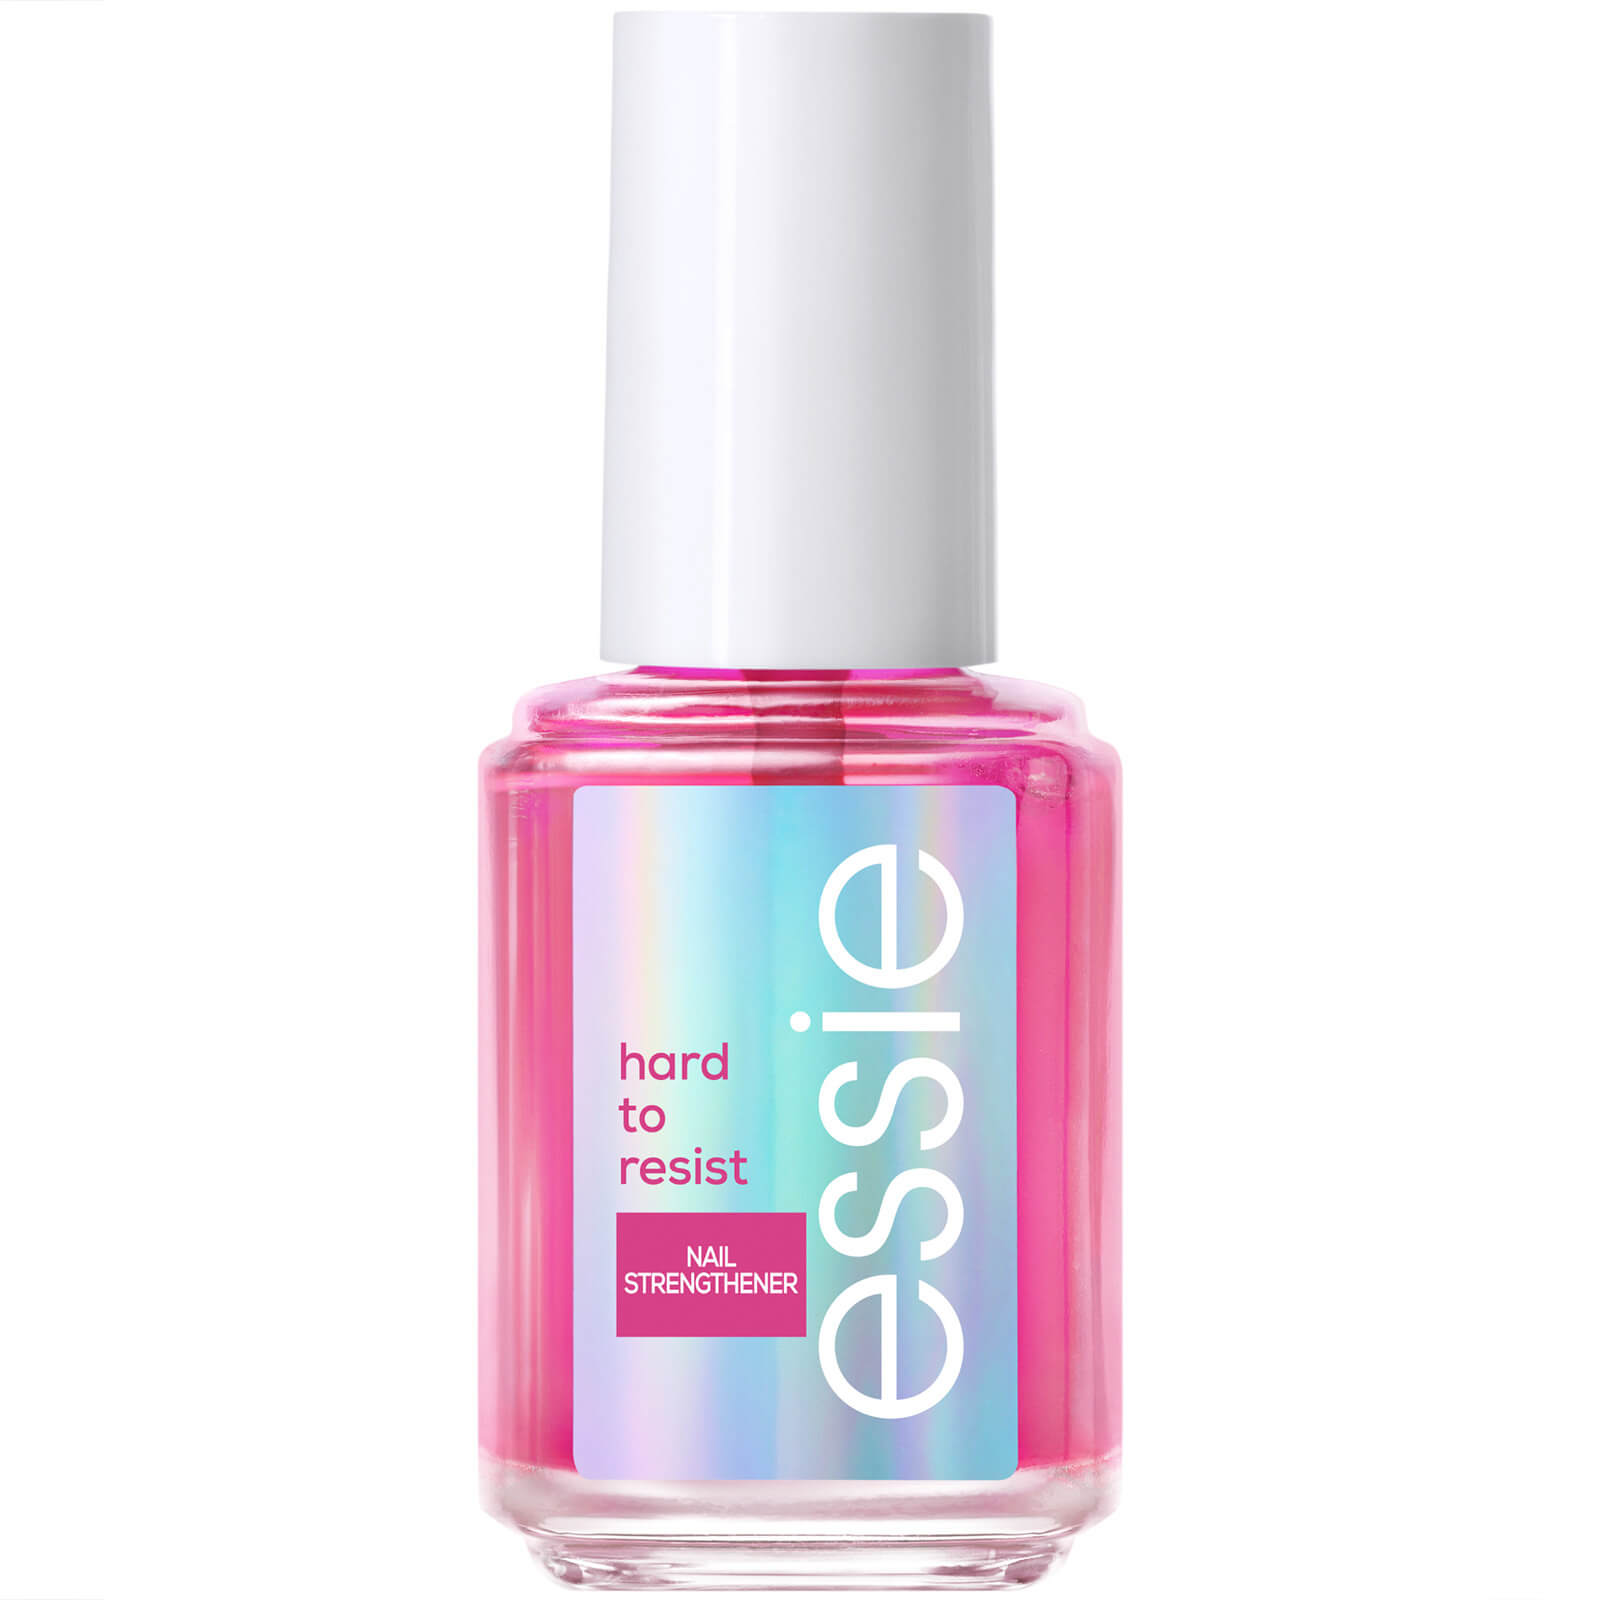 essie Nail Care Hard to Resist Nail Strengthener - Pink Tint 13.5ml von essie